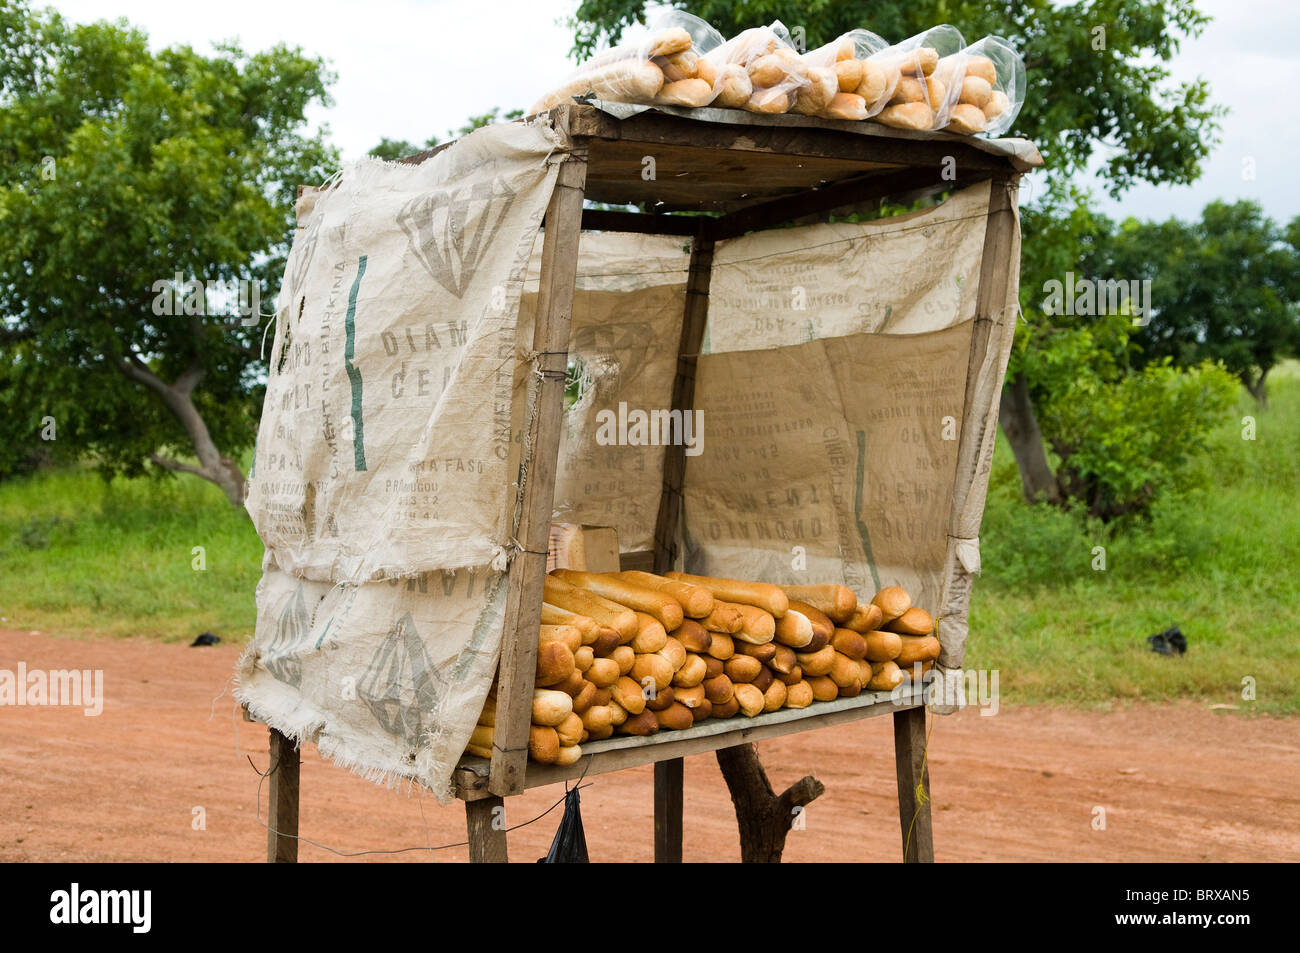 Des baguettes fraîches vendues sur une route principale au Burkina Faso. Banque D'Images